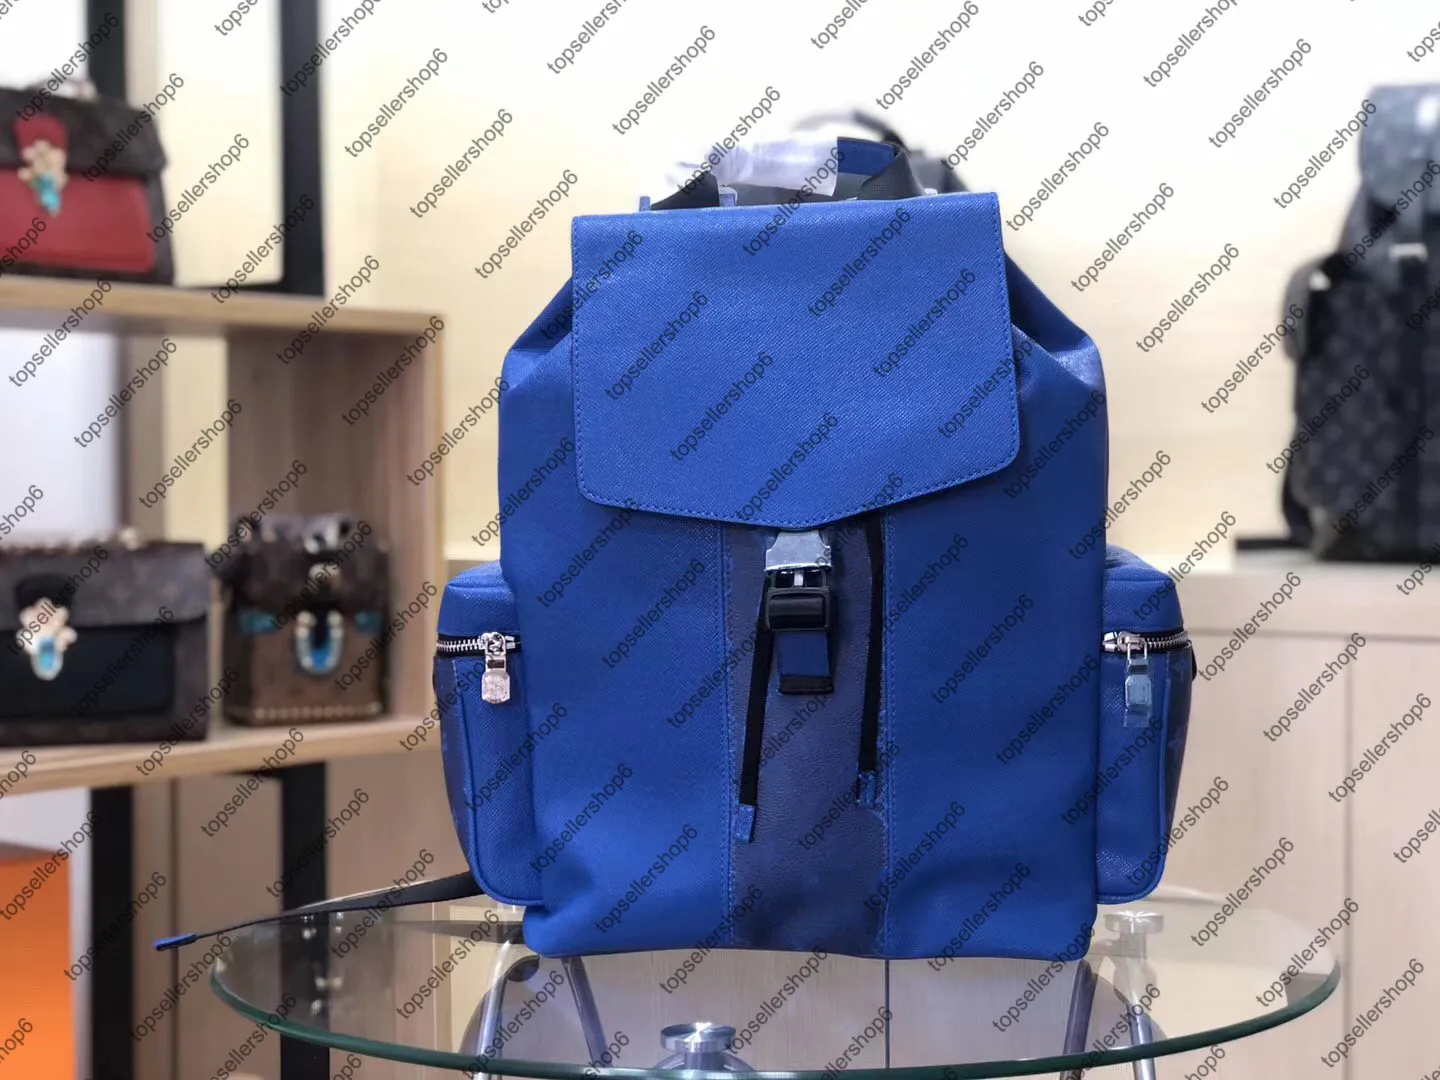 M30417 M30419 OUTDOOR BACKPACK bag genuine cowhide leather Eclipse canvas designer men travel Luggage satchel purse tote shoulder 319j